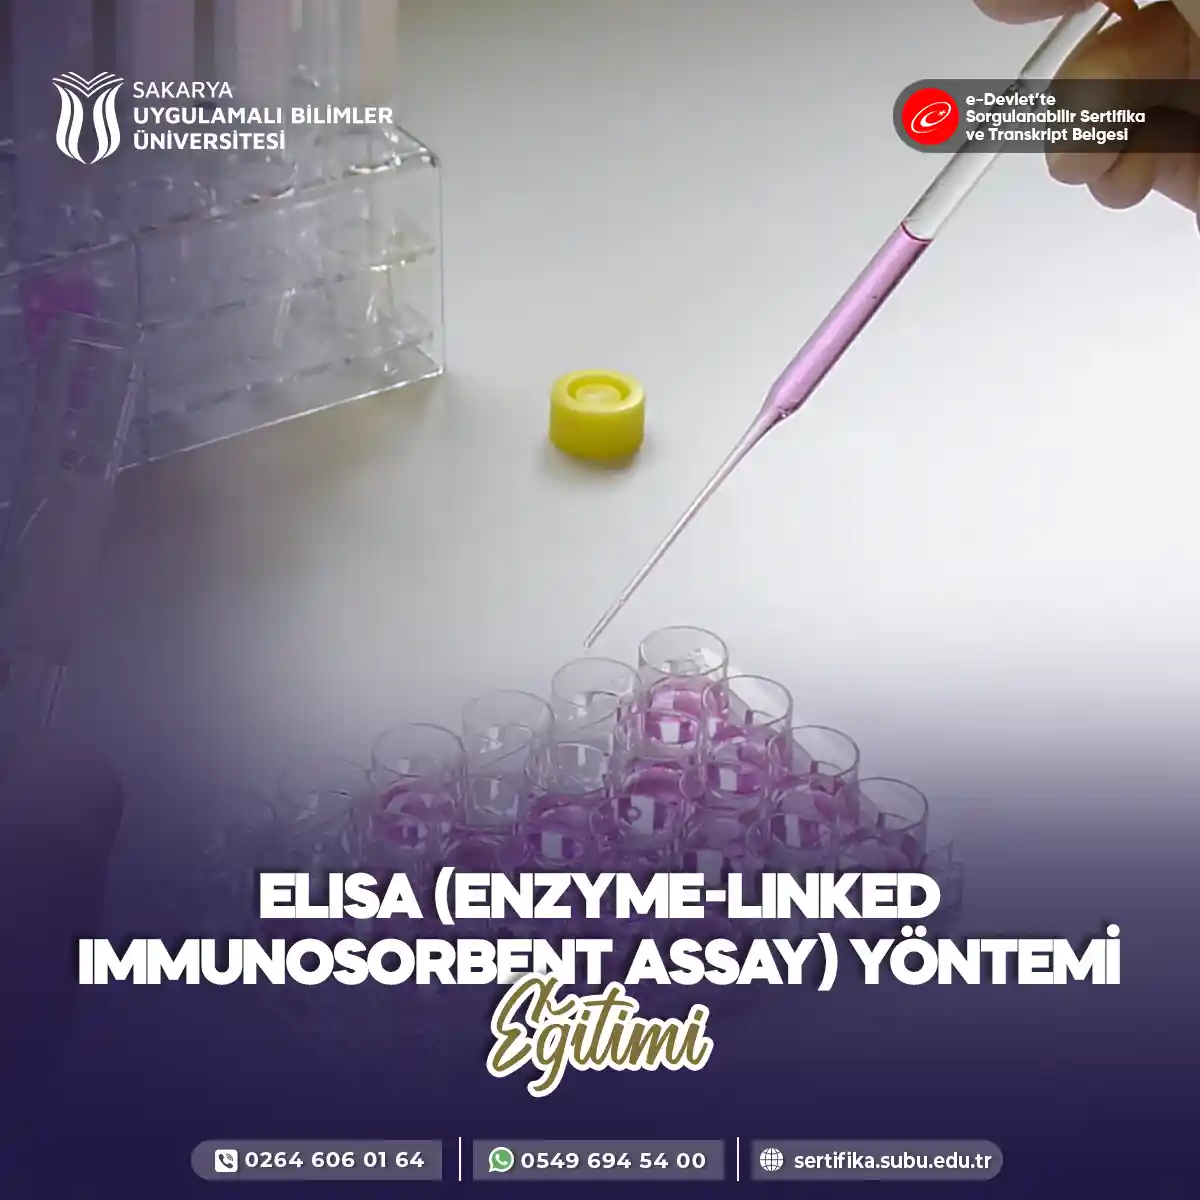 ELISA (Enzyme-Linked Immunosorbent Assay) Yöntemi Eğitimi